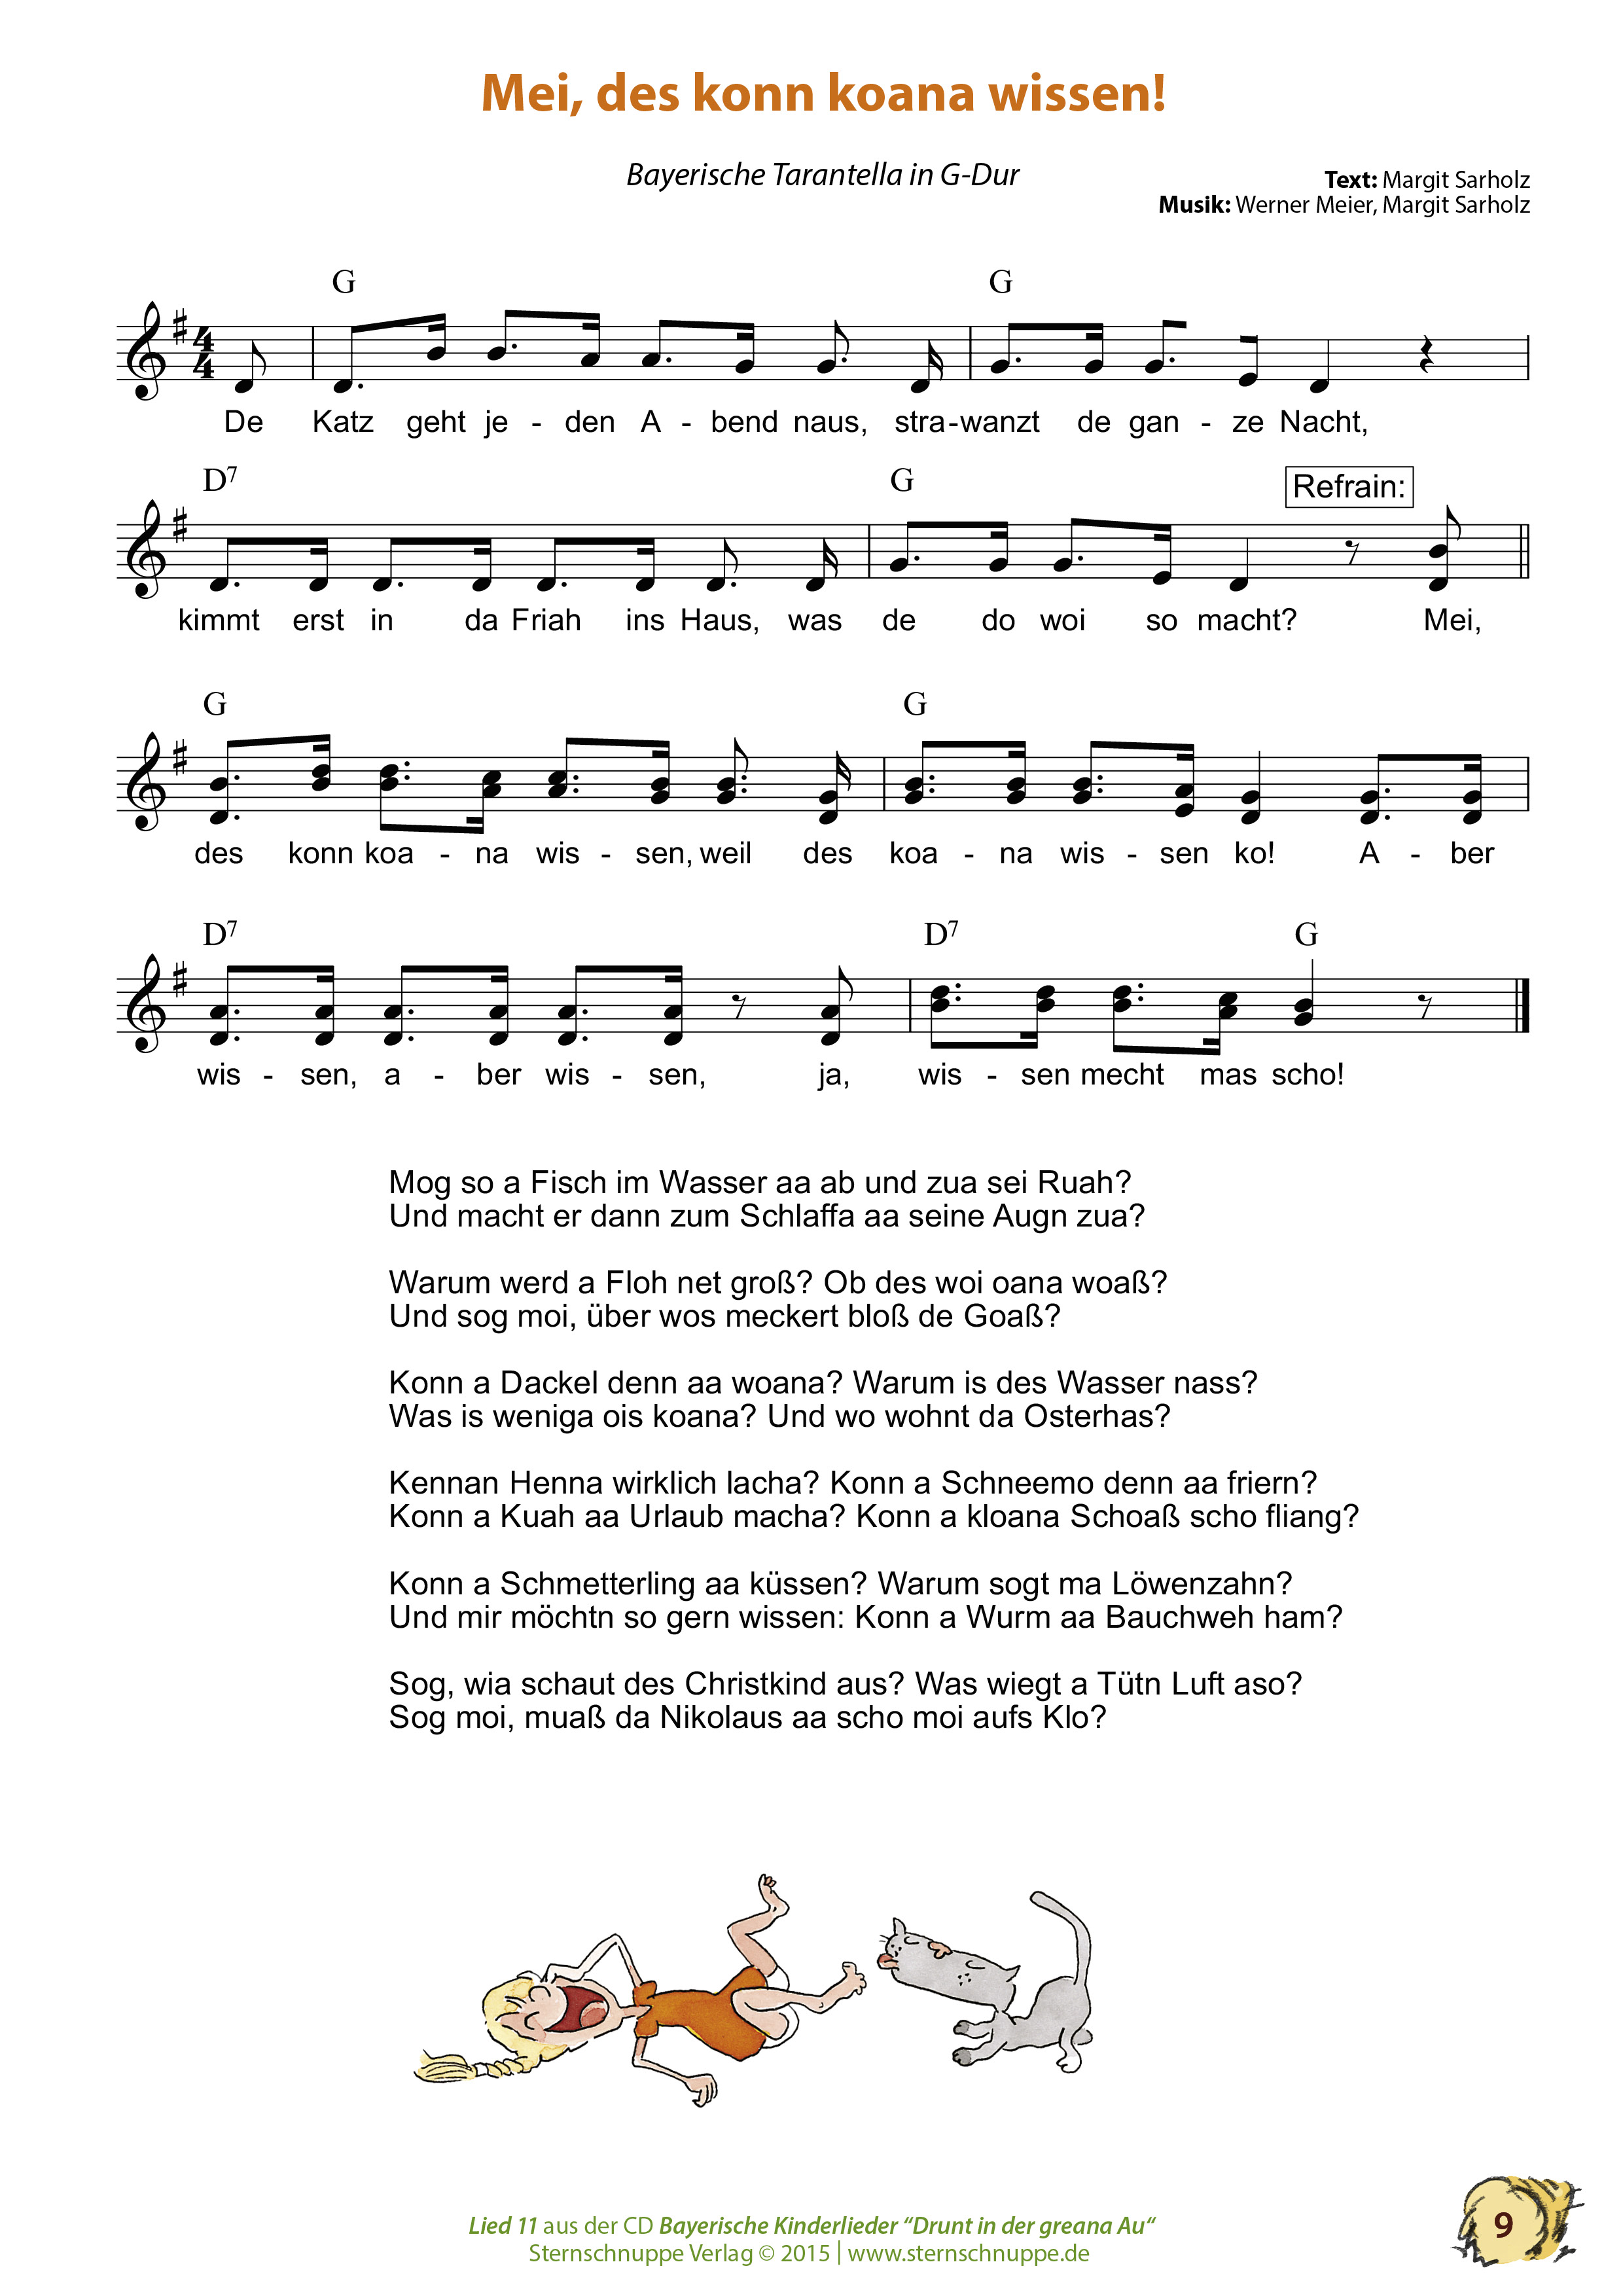 Liedtext, Akkorde und Noten vom Kinderlied Mei, des konn koana wissen!